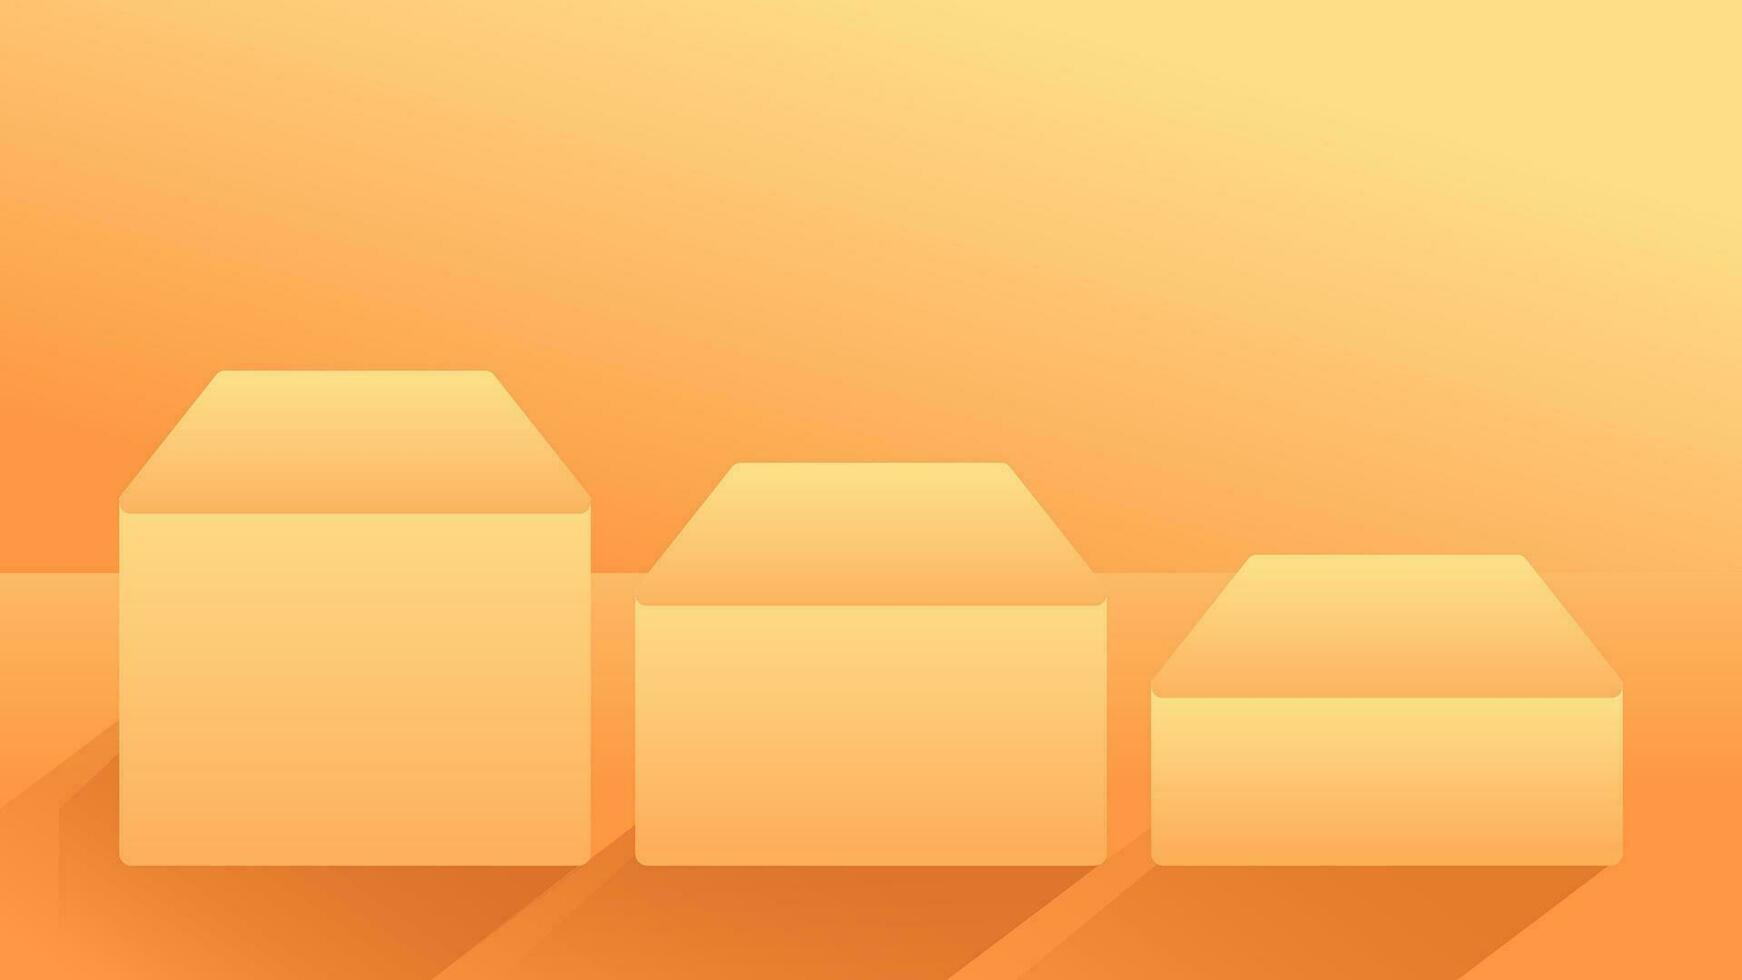 vector ilustración degradado naranja amarillo habitación 3d vacío monitor cajas producto escaparate sala de exposición